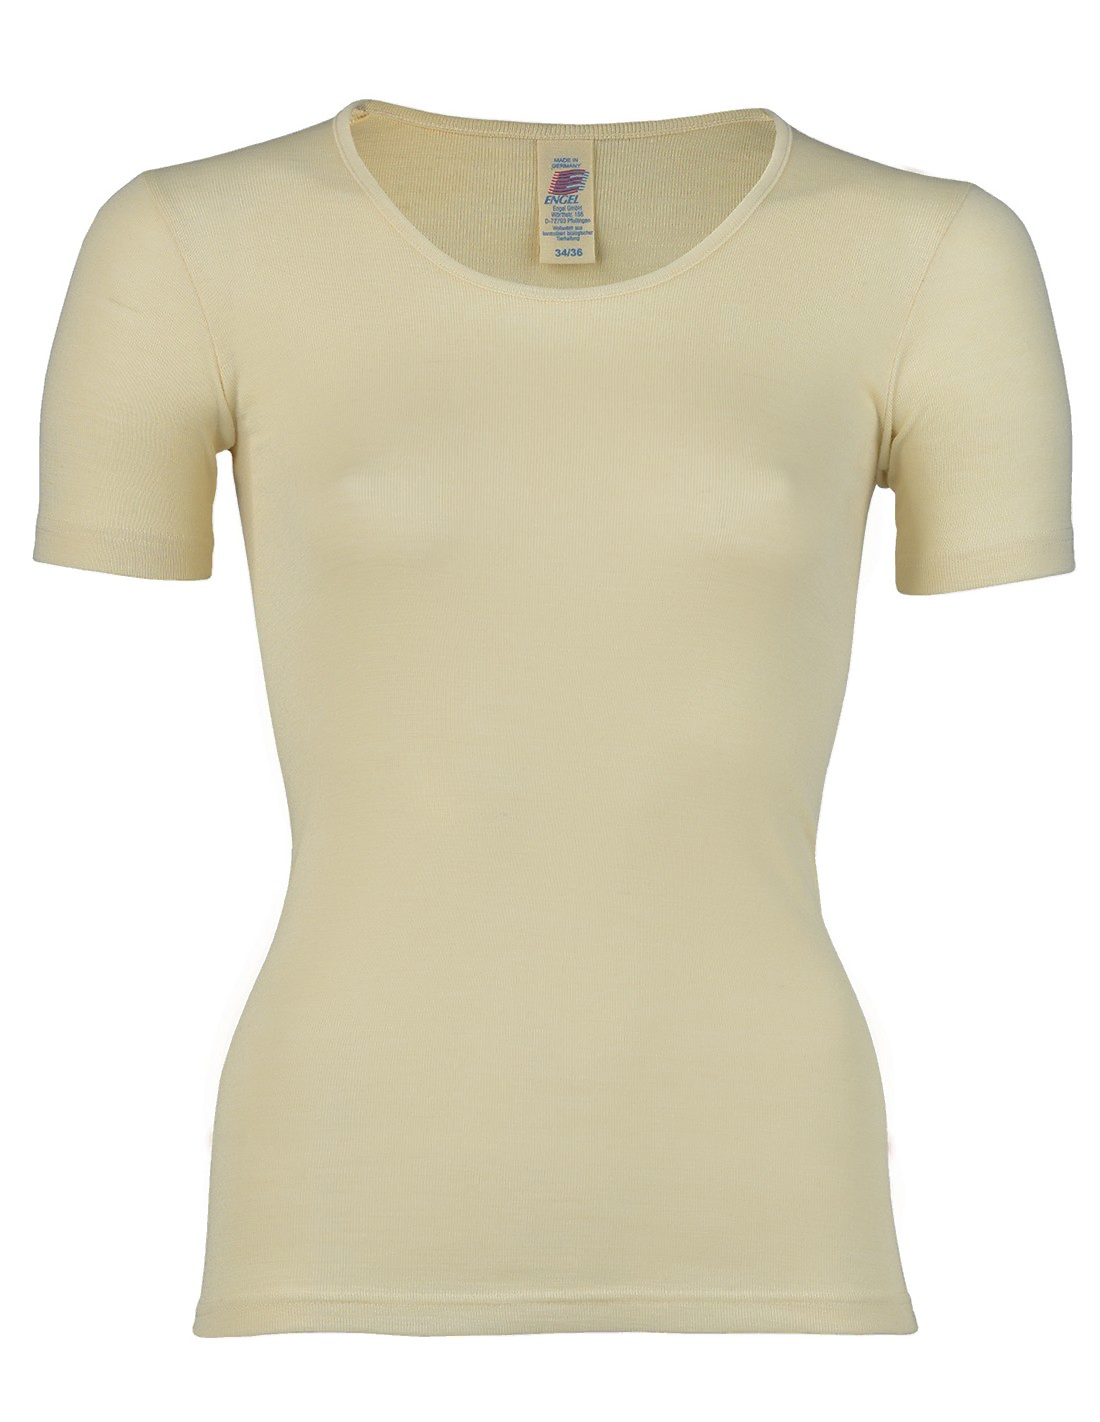 Image of Dames T-Shirt Zijde Wol Engel Natur, Kleur Gebroken wit, Maat 38/40 - Medium